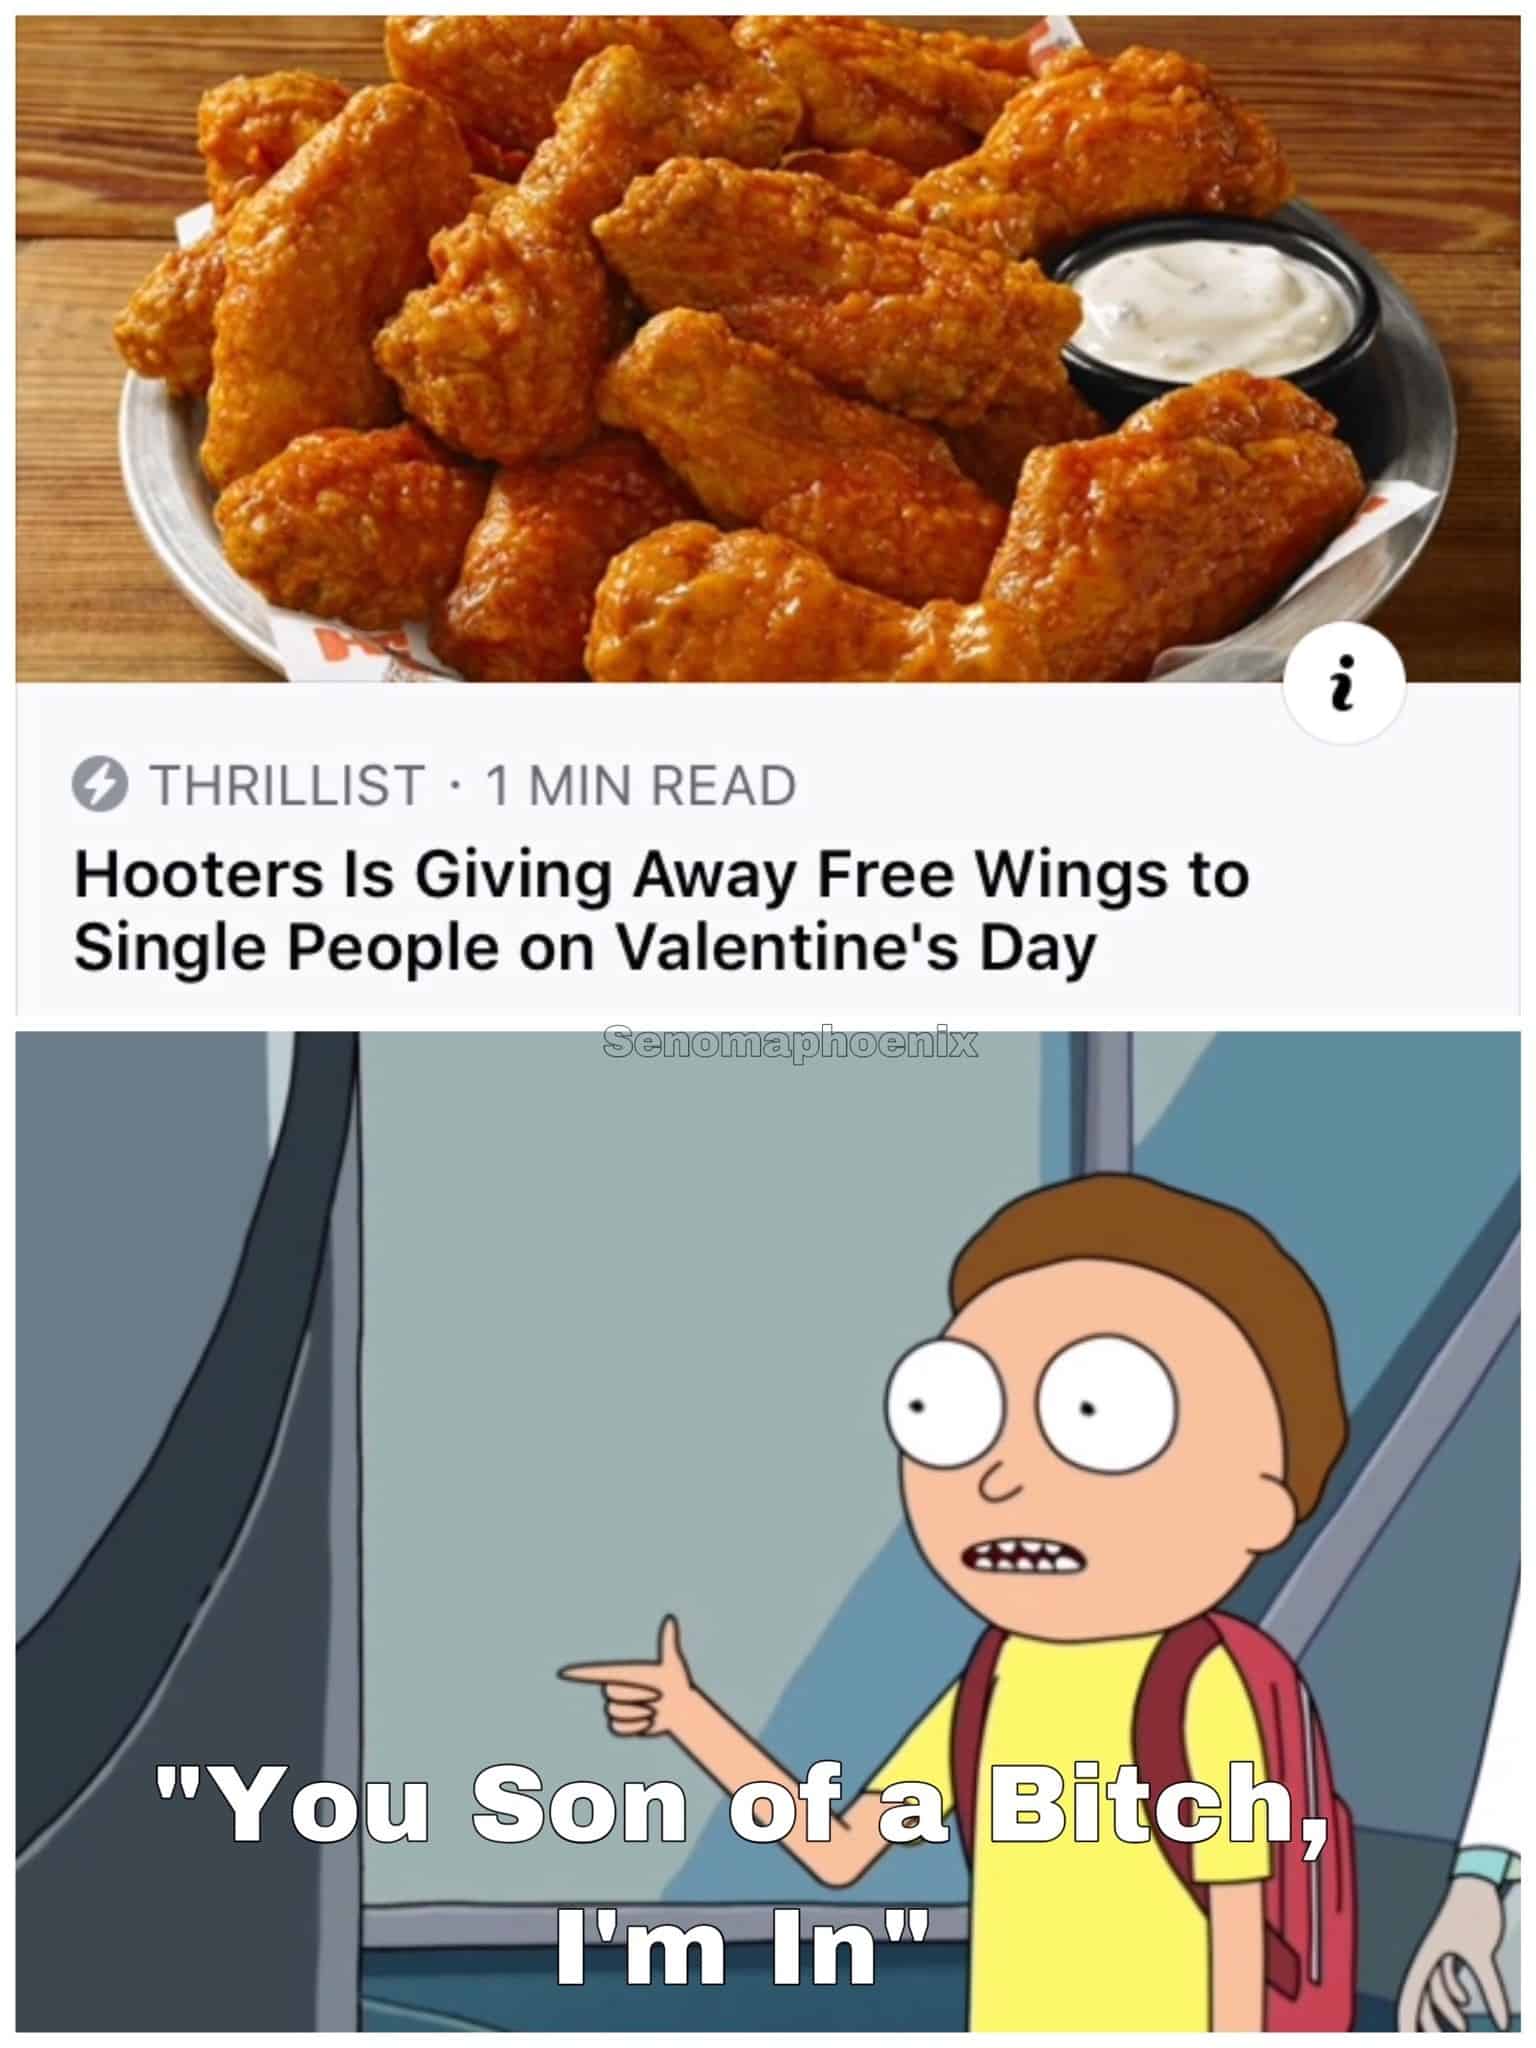 Hooters раздает бесплатные крылышки одиноким людям в день святого Валентина